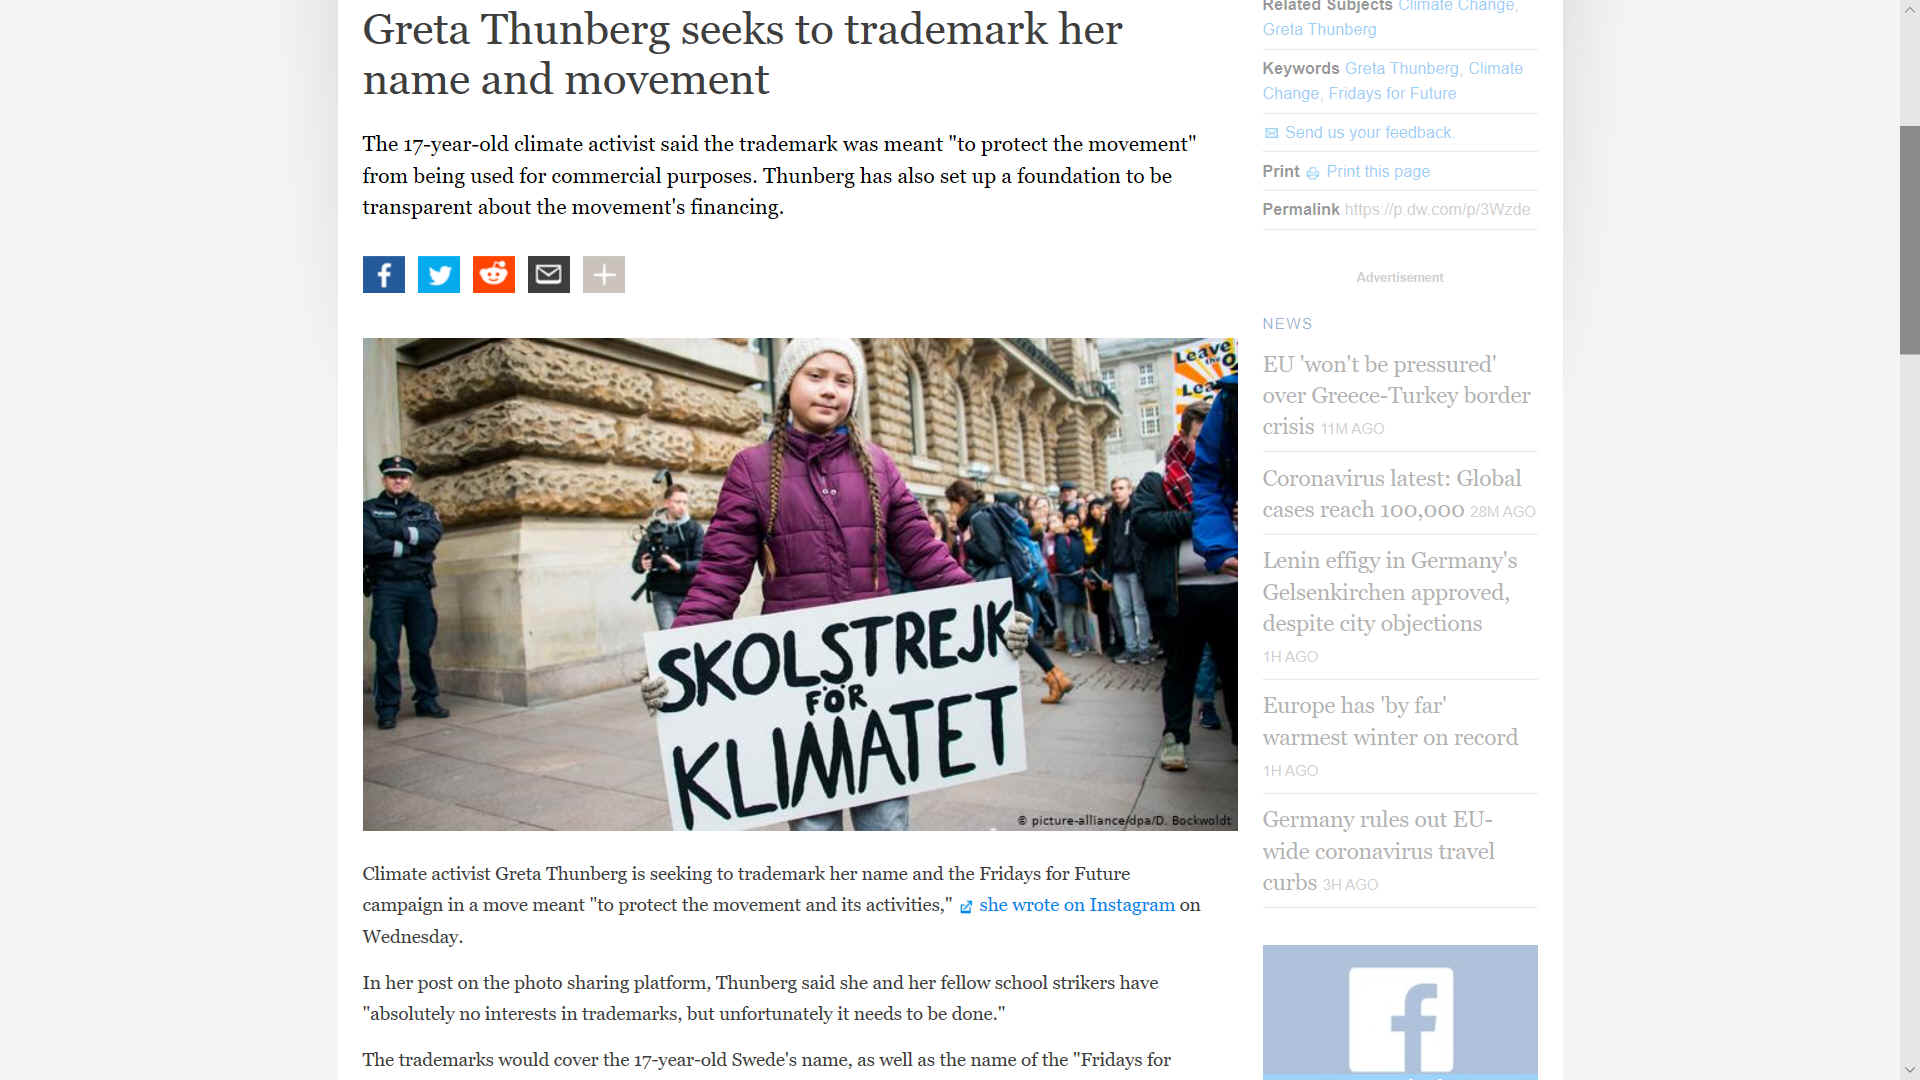 Greta Thunberg seeks trademark for Skolstrejk For Klimatet